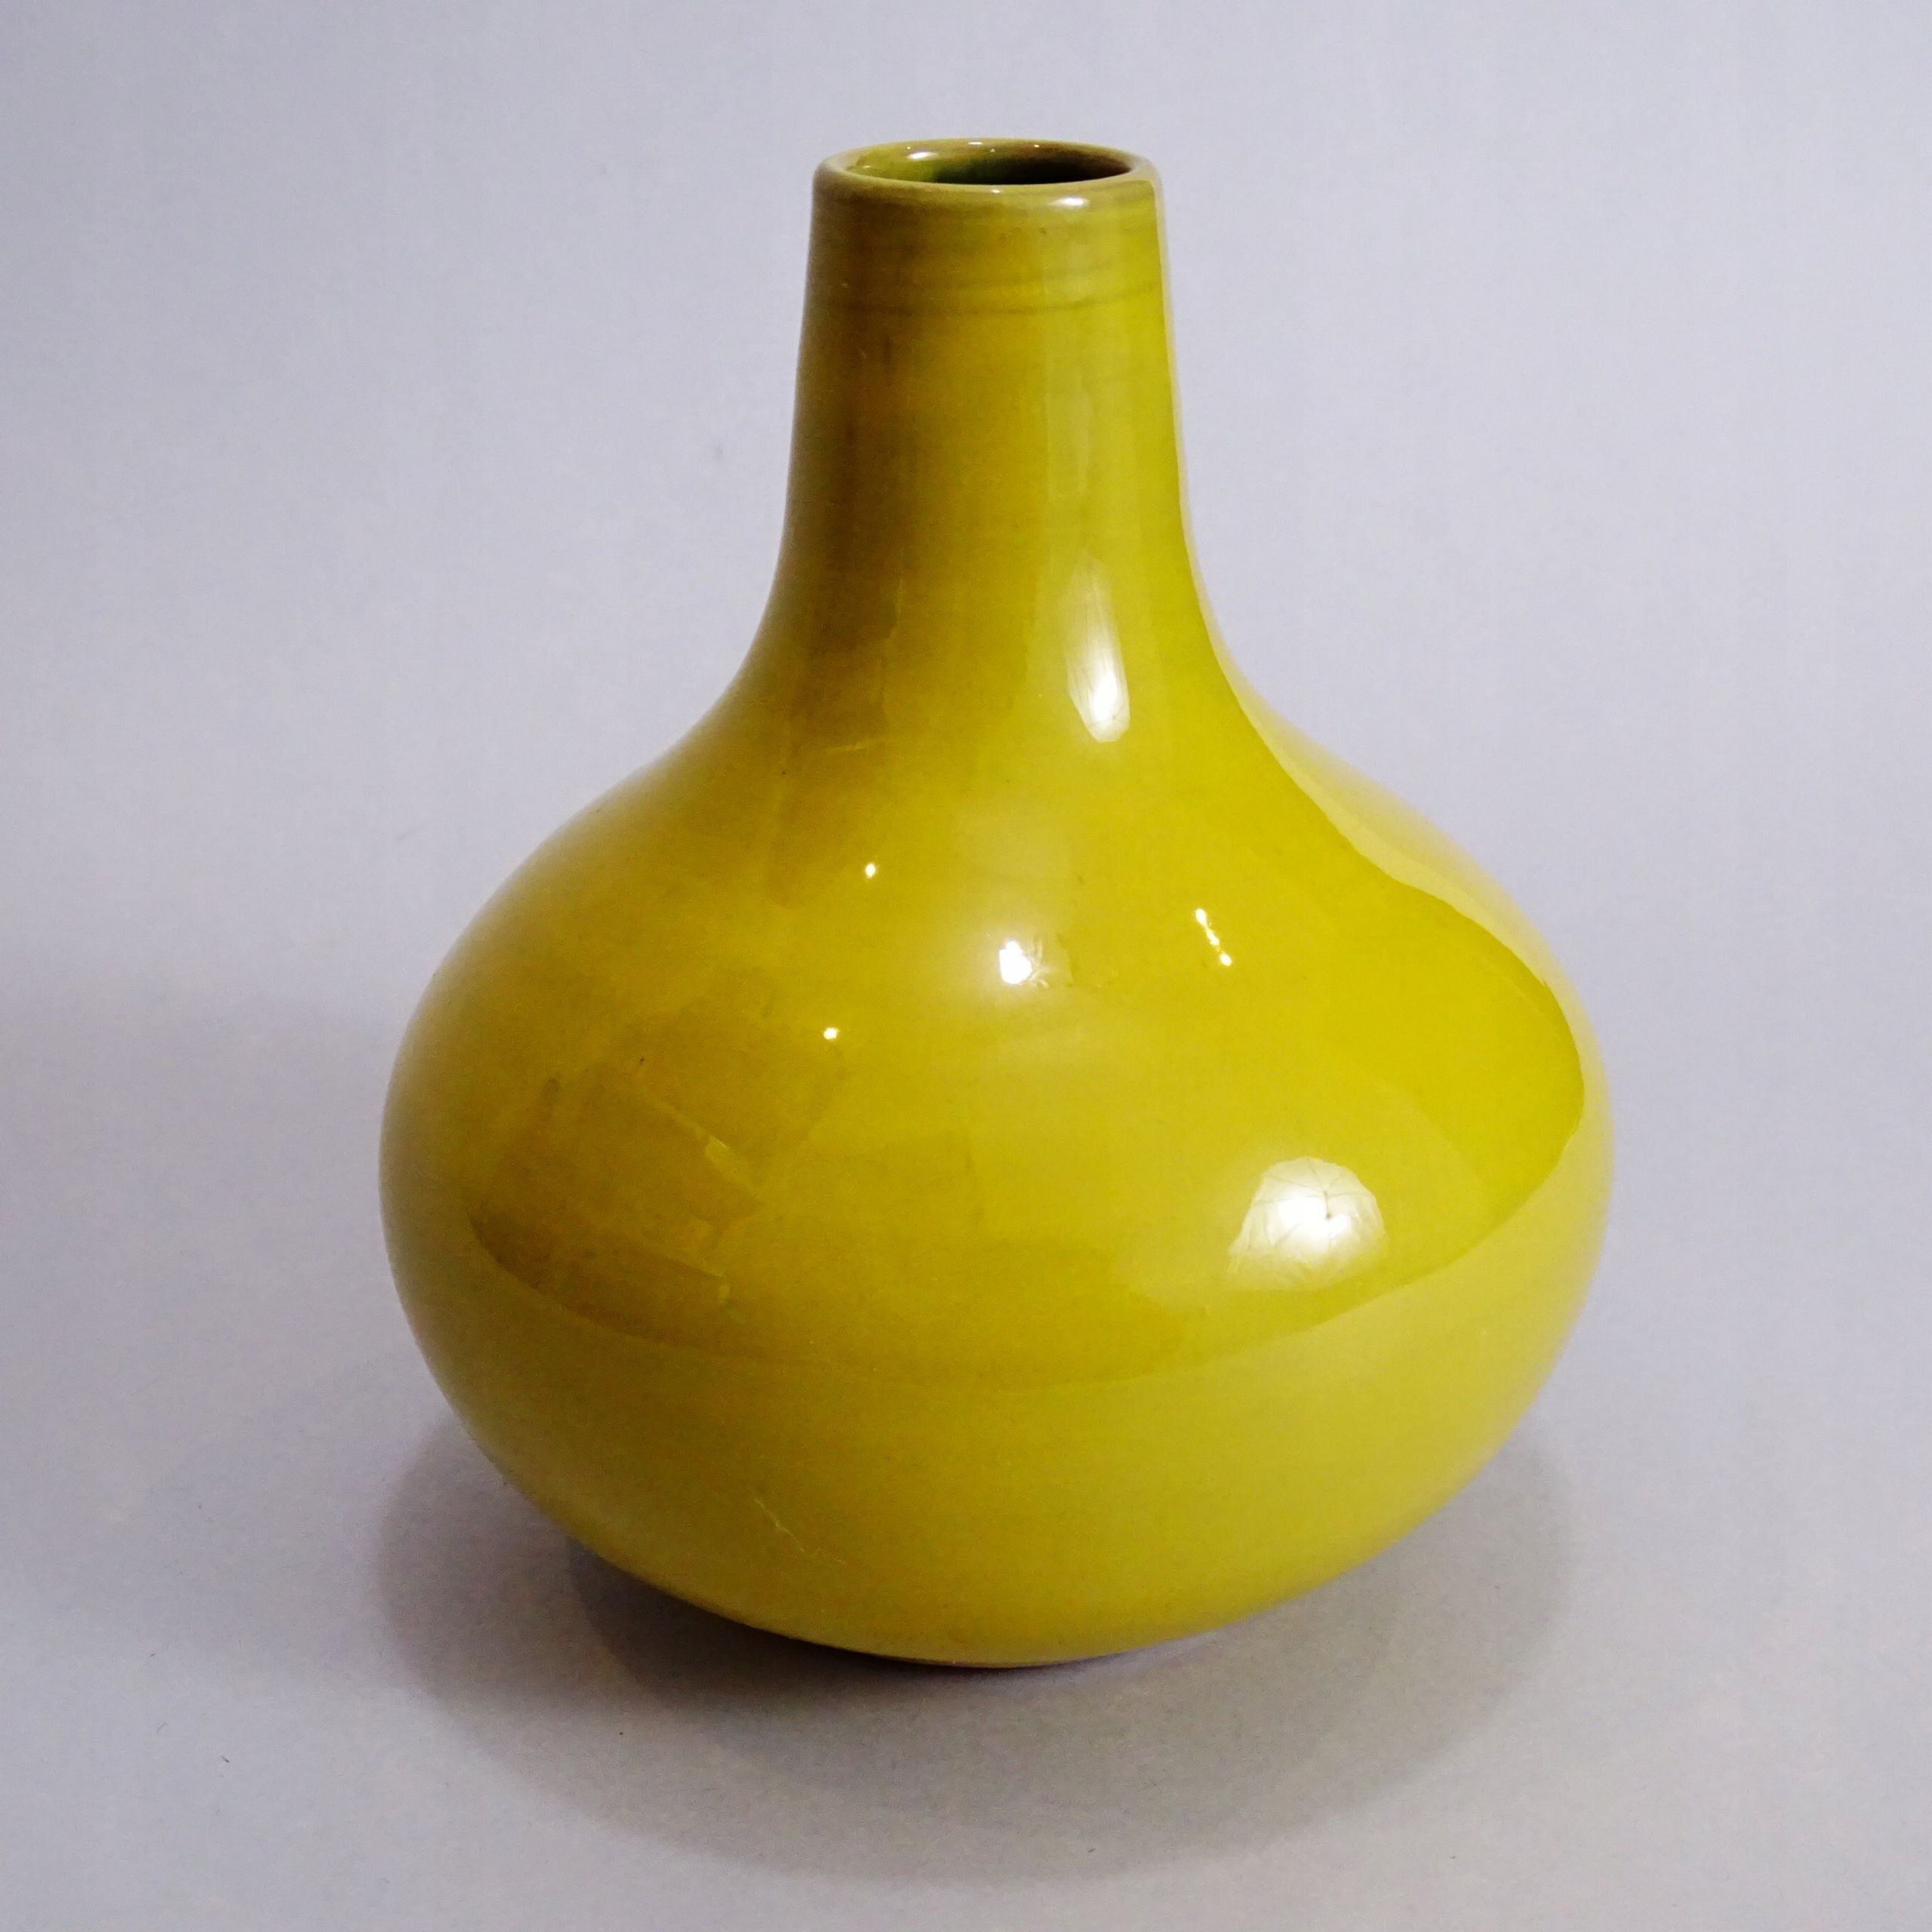 gramann romhild piękny ceramiczny wazon lata 60/70